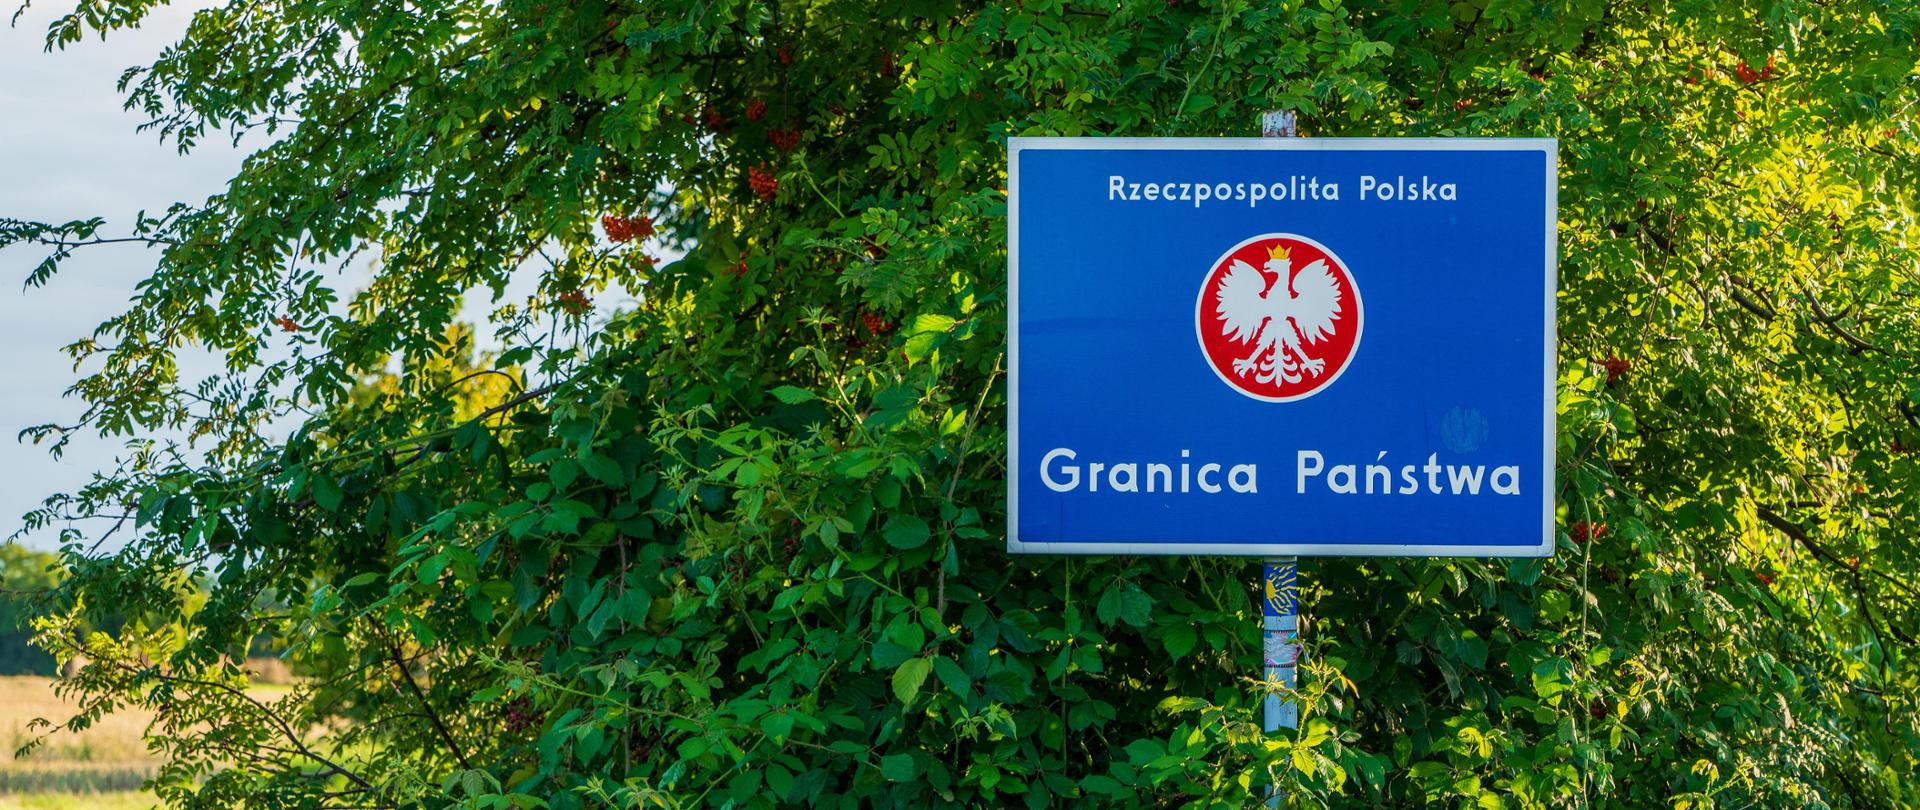 Road sign at the Polish border